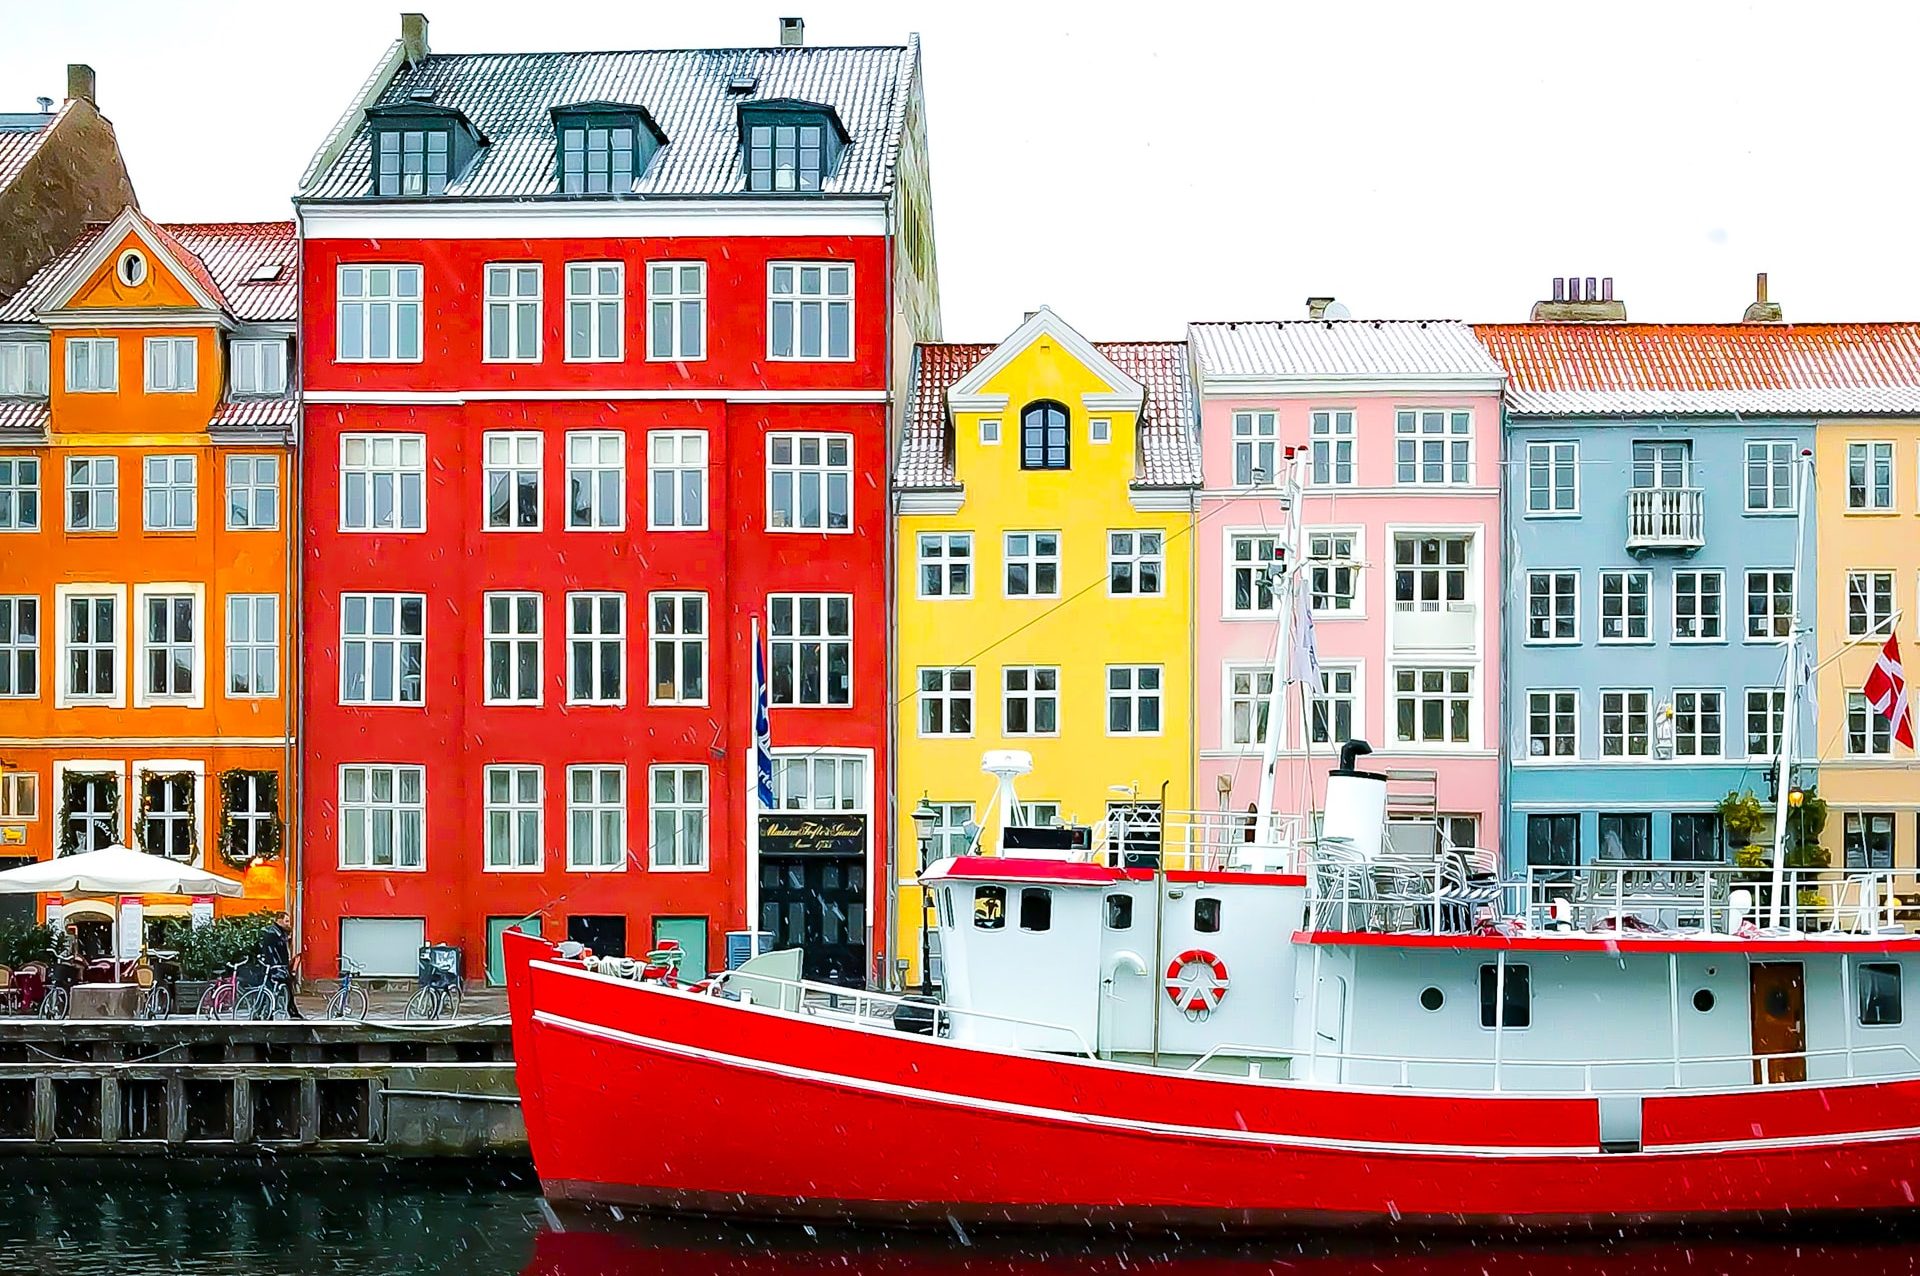 Picturesque scenery in Copenhagen